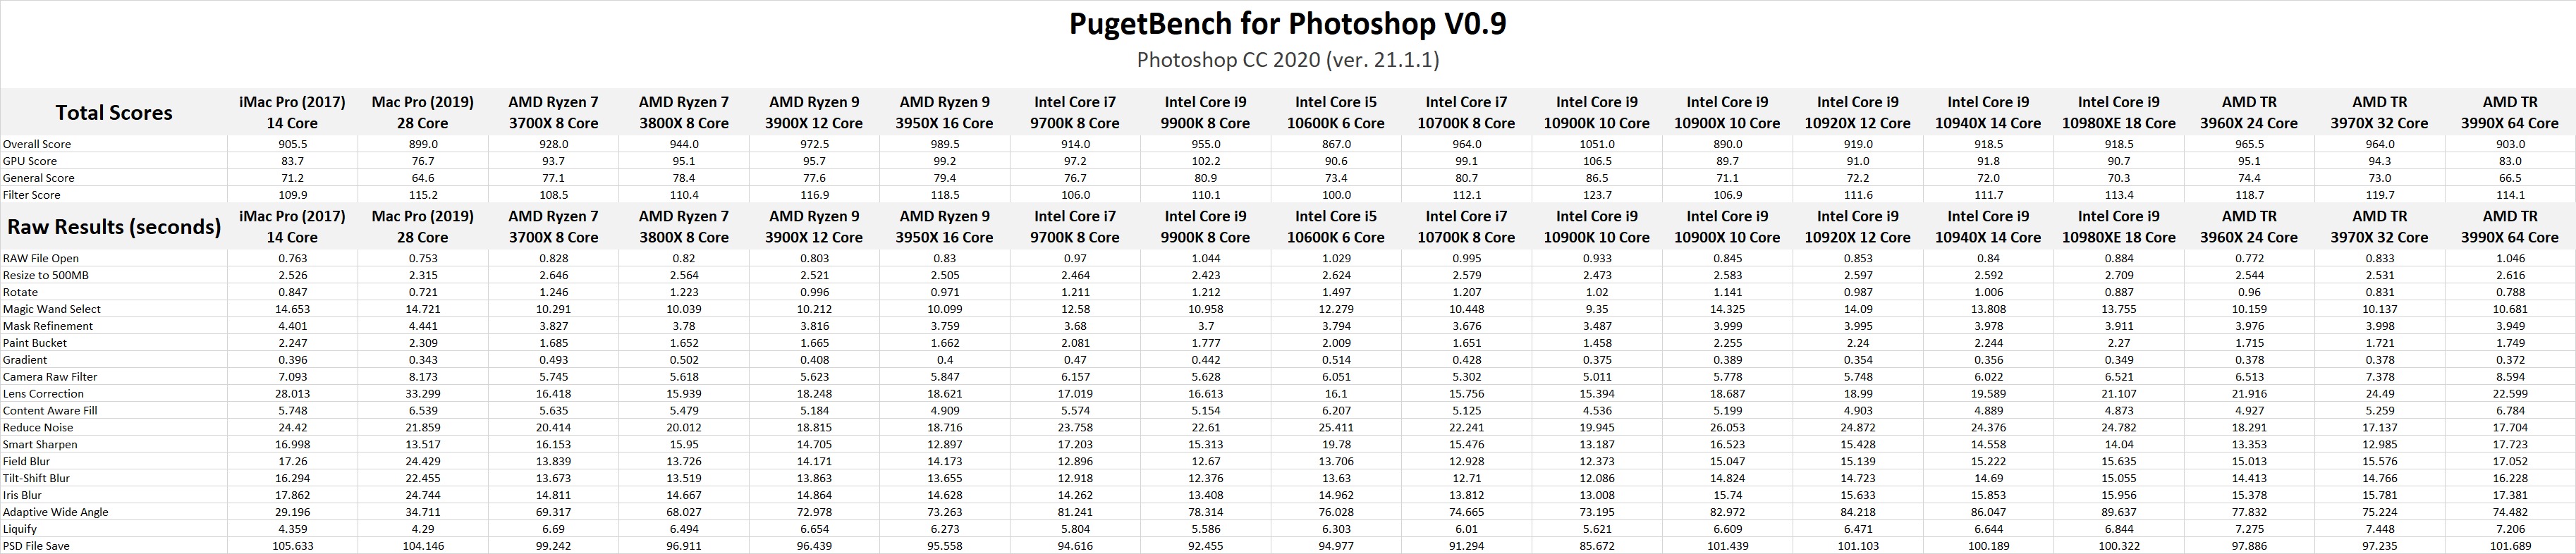 Intel Core 10th Gen vs AMD Ryzen 3rd Gen Photoshop Benchmark Results